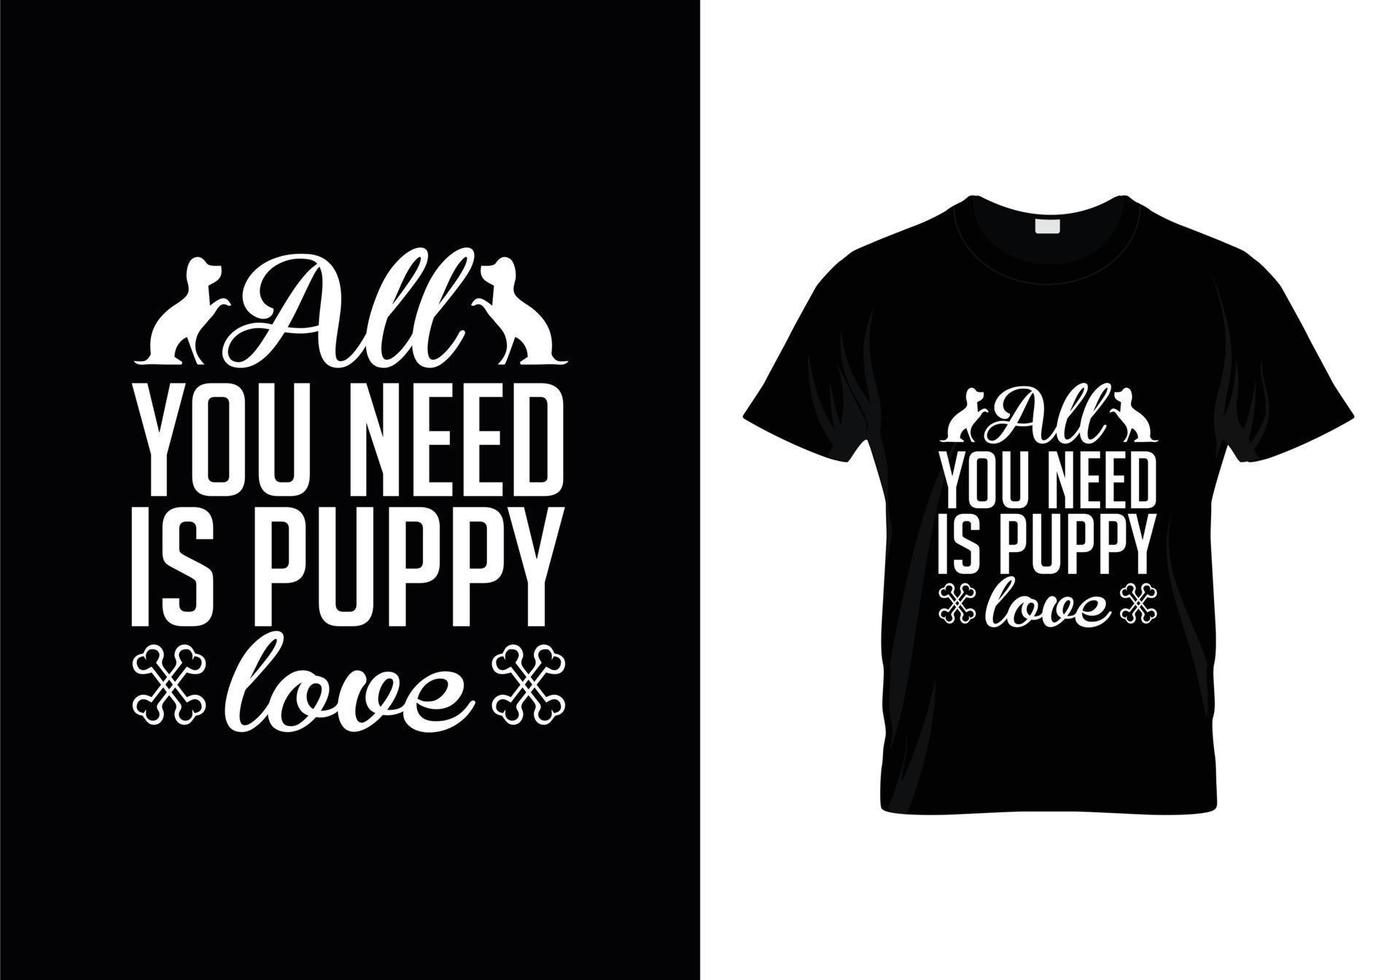 vector de diseño de camisetas con tipografía de perros, diseño de camisetas con citas de amantes de los perros.